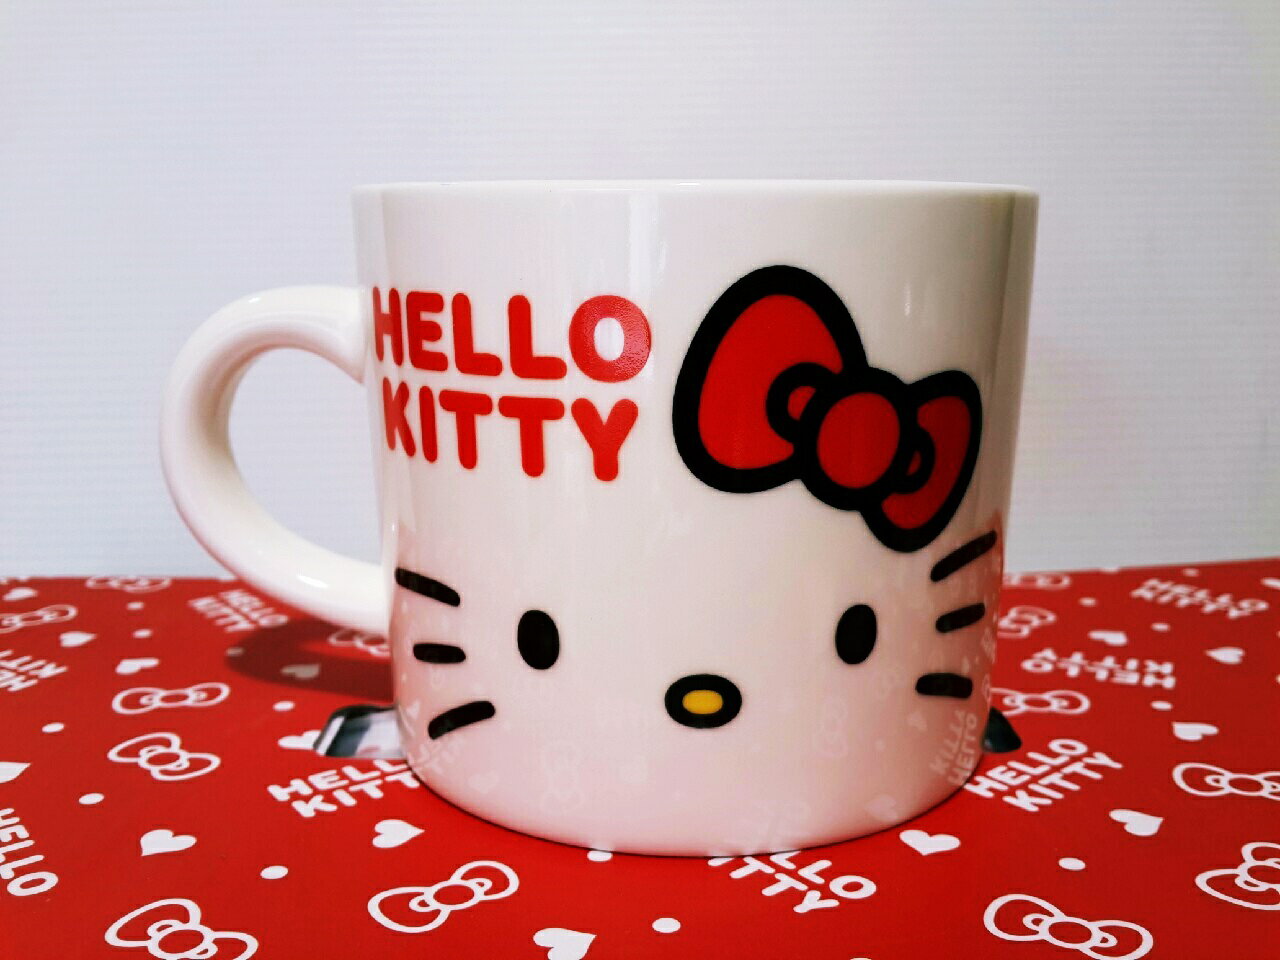 【真愛日本】15121200044 摩卡馬克杯-大臉紅結 凱蒂貓 三麗鷗 杯子 馬克杯 水杯 生活用品